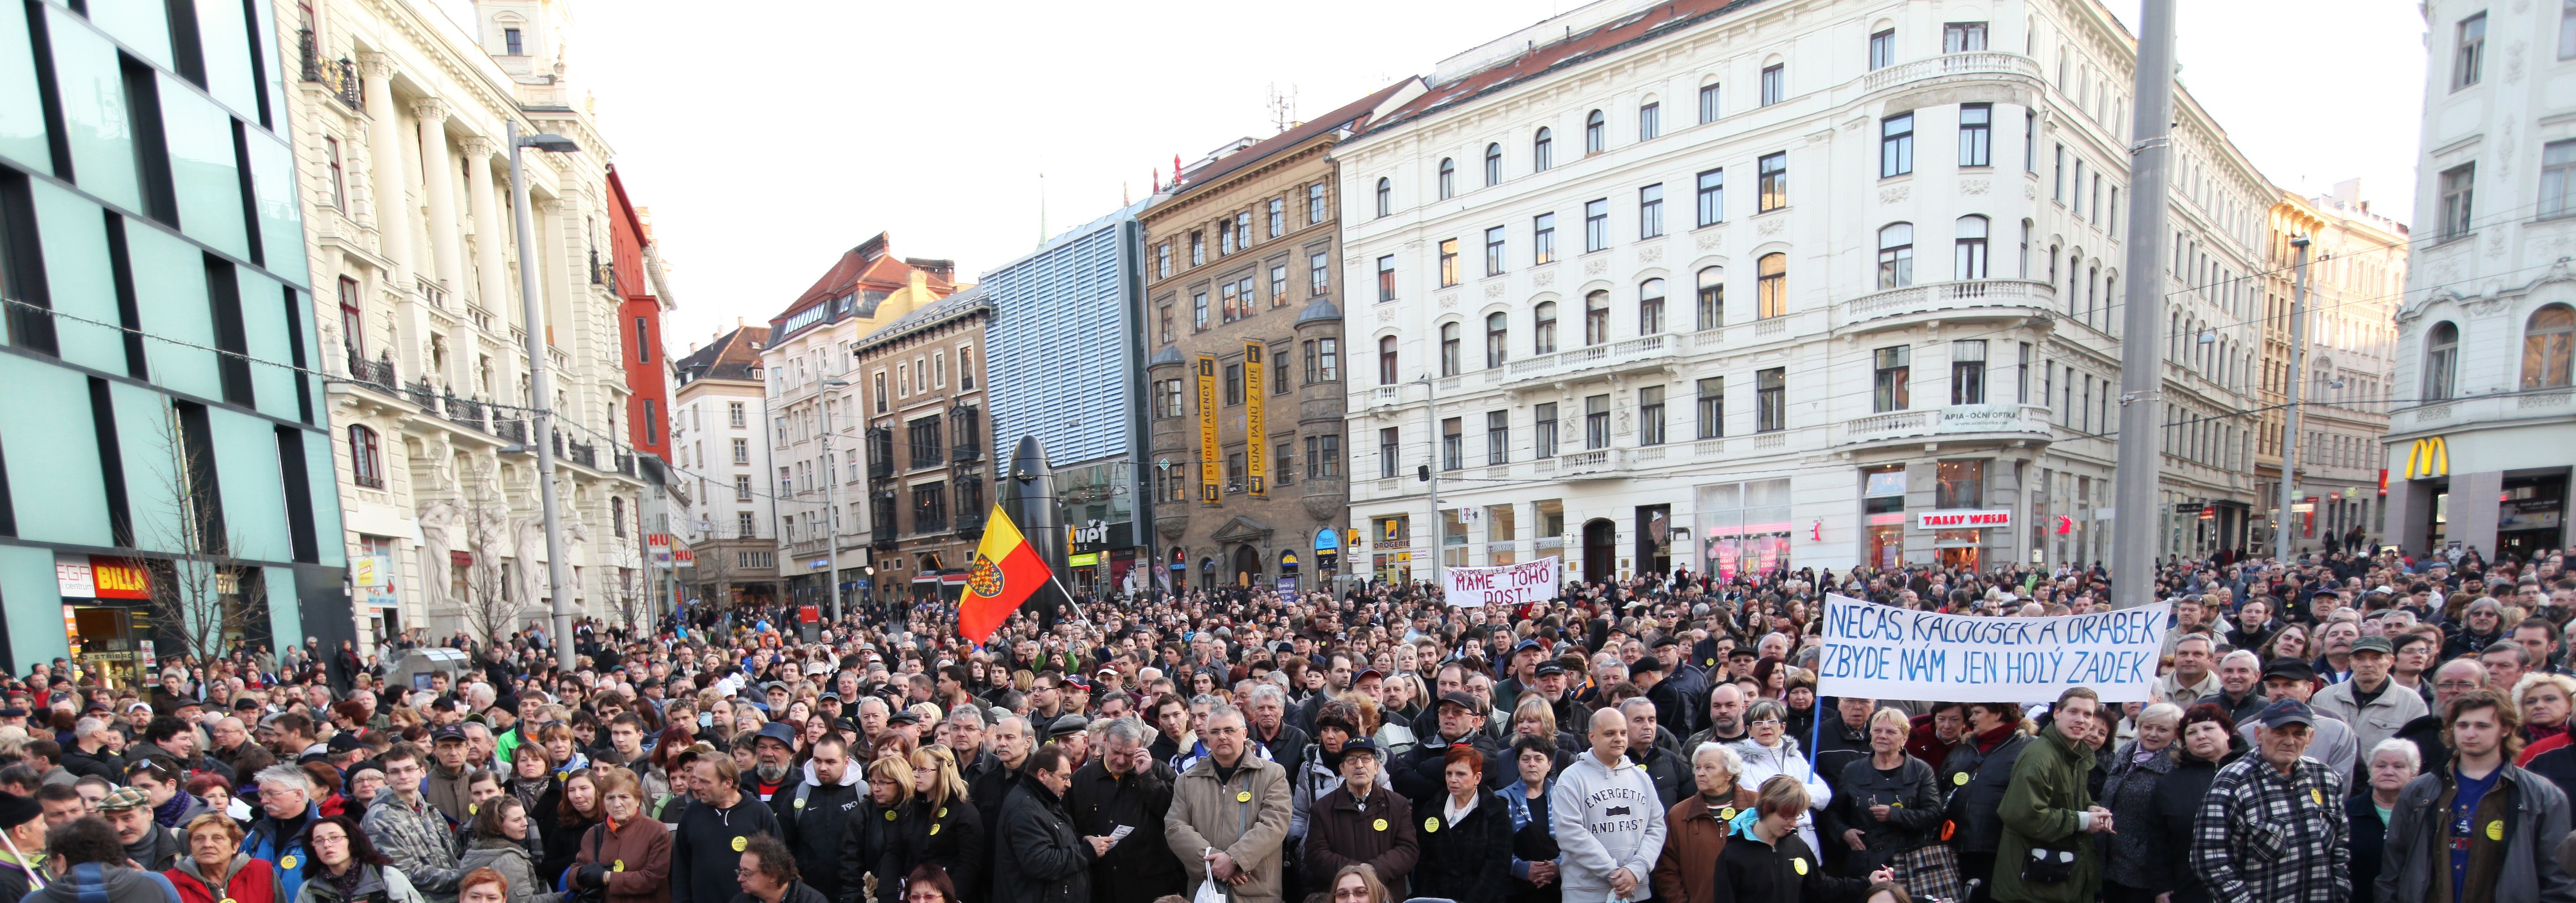 Lidé demonstrují proti vládě ČR a prezidentovi - 5 - Lidé protestují proti vládě Petra Nečase a prezidentu Klausovi (5/15)